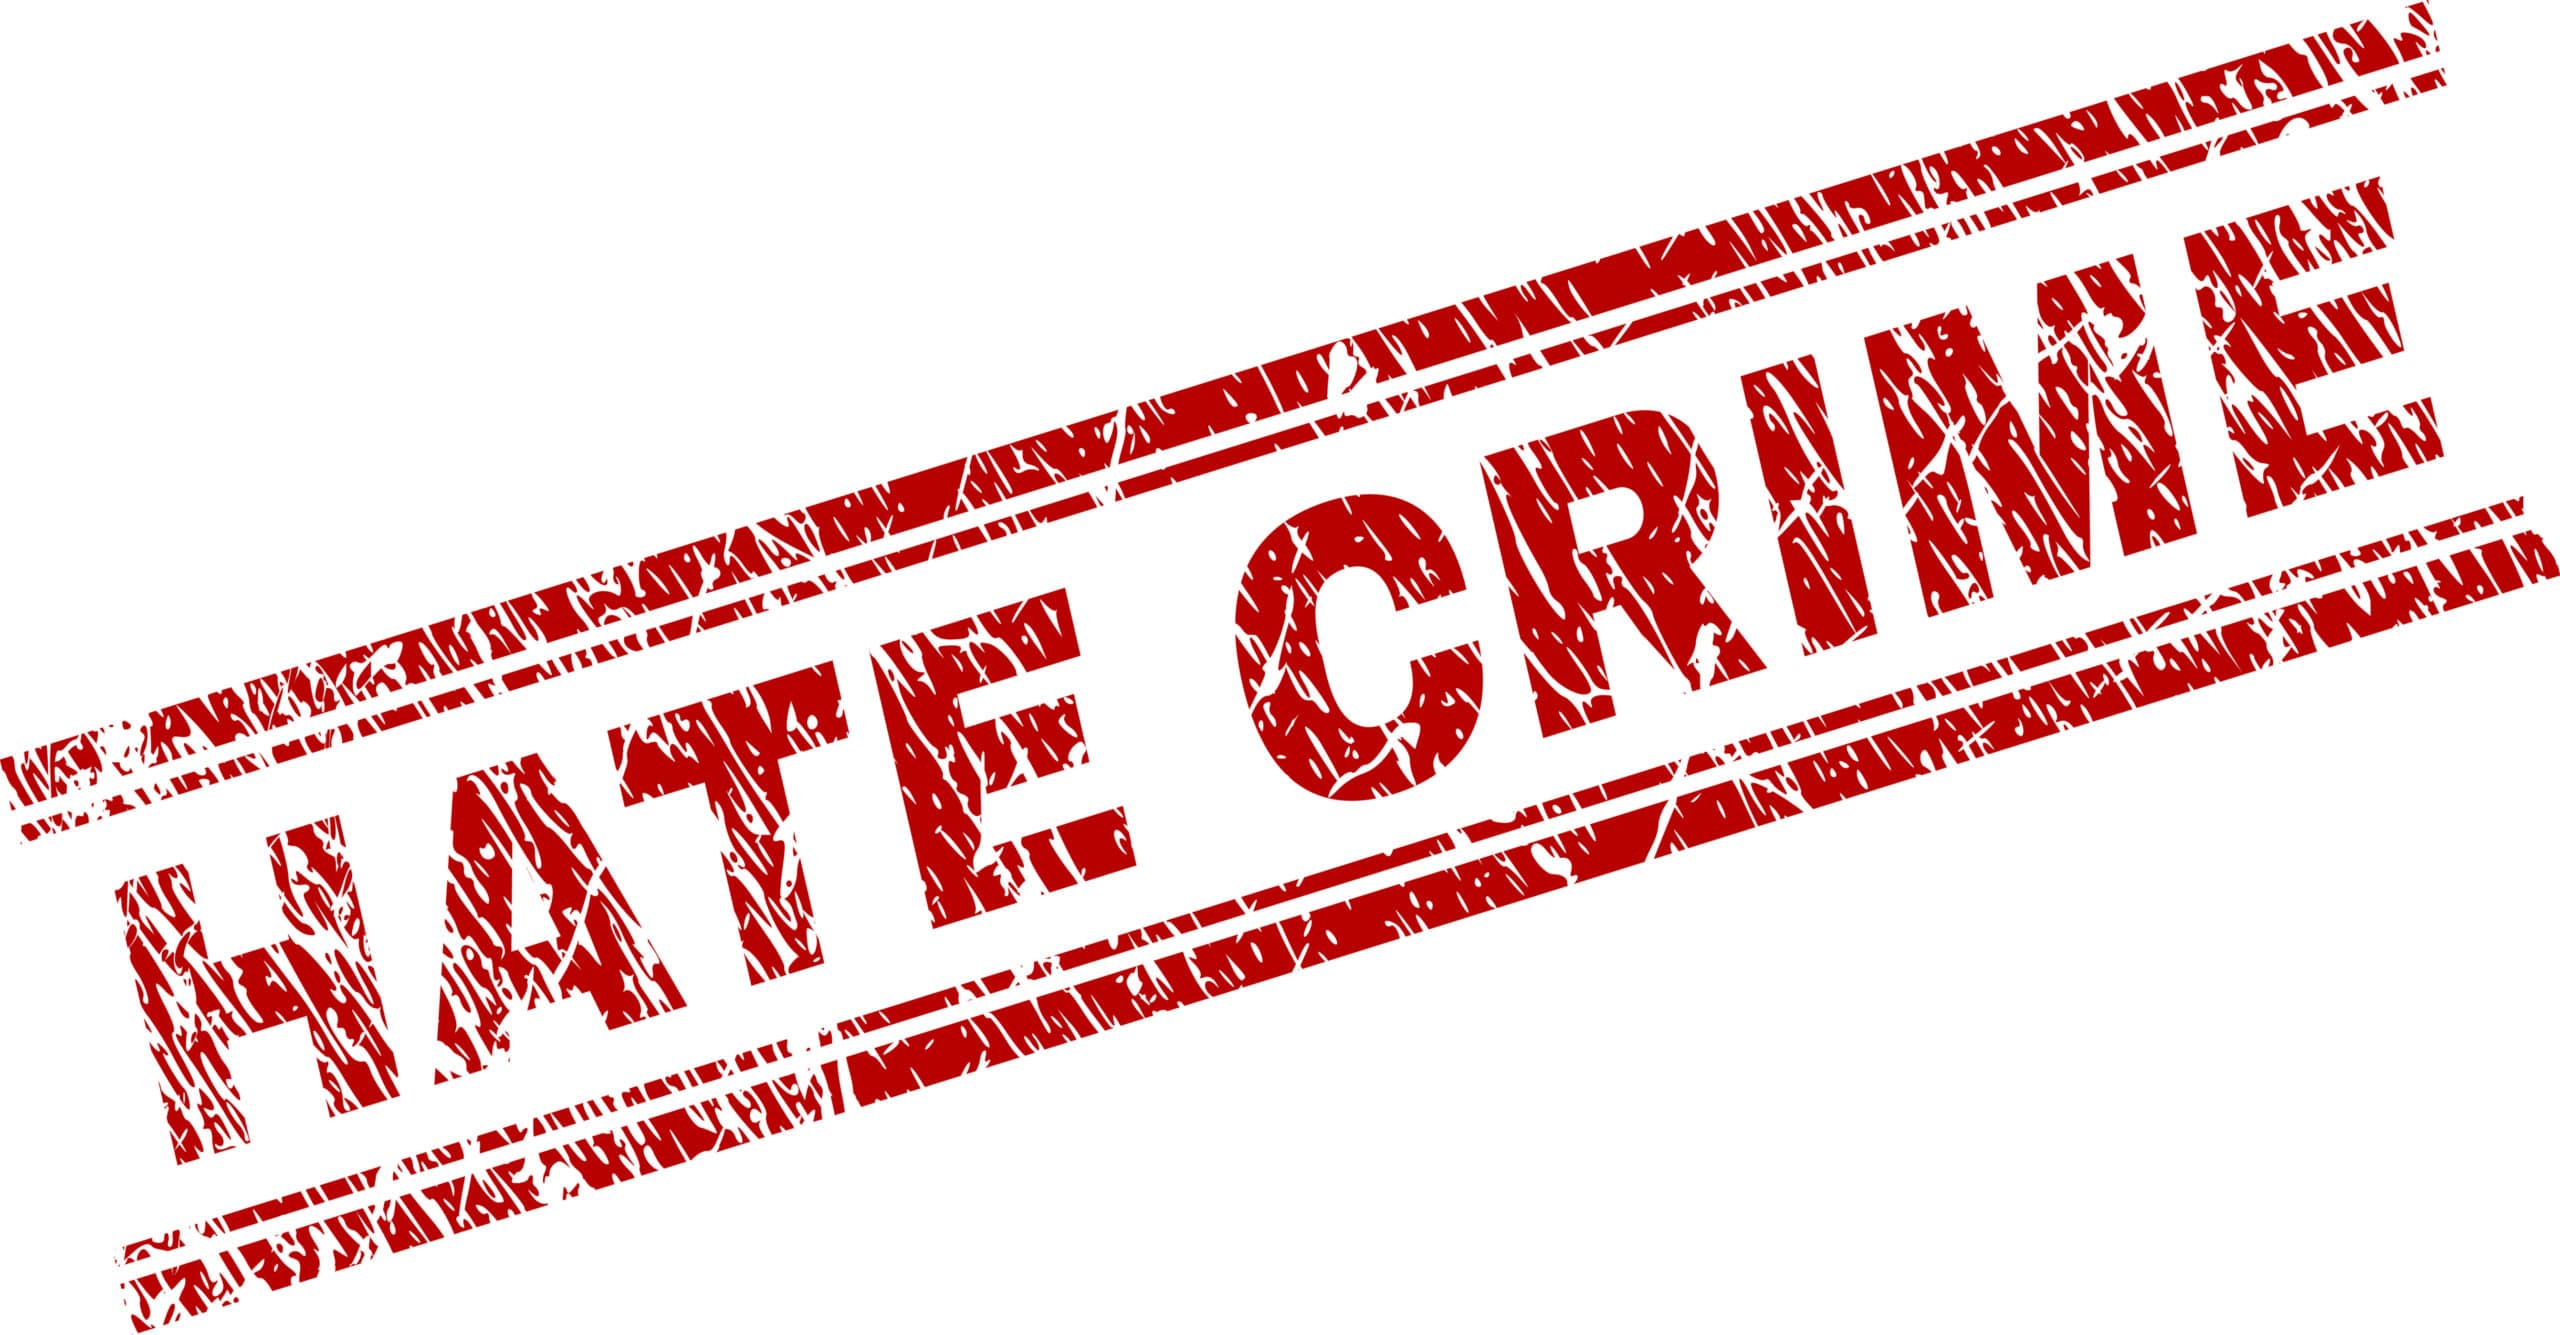 hate crime - hoax hate crimes